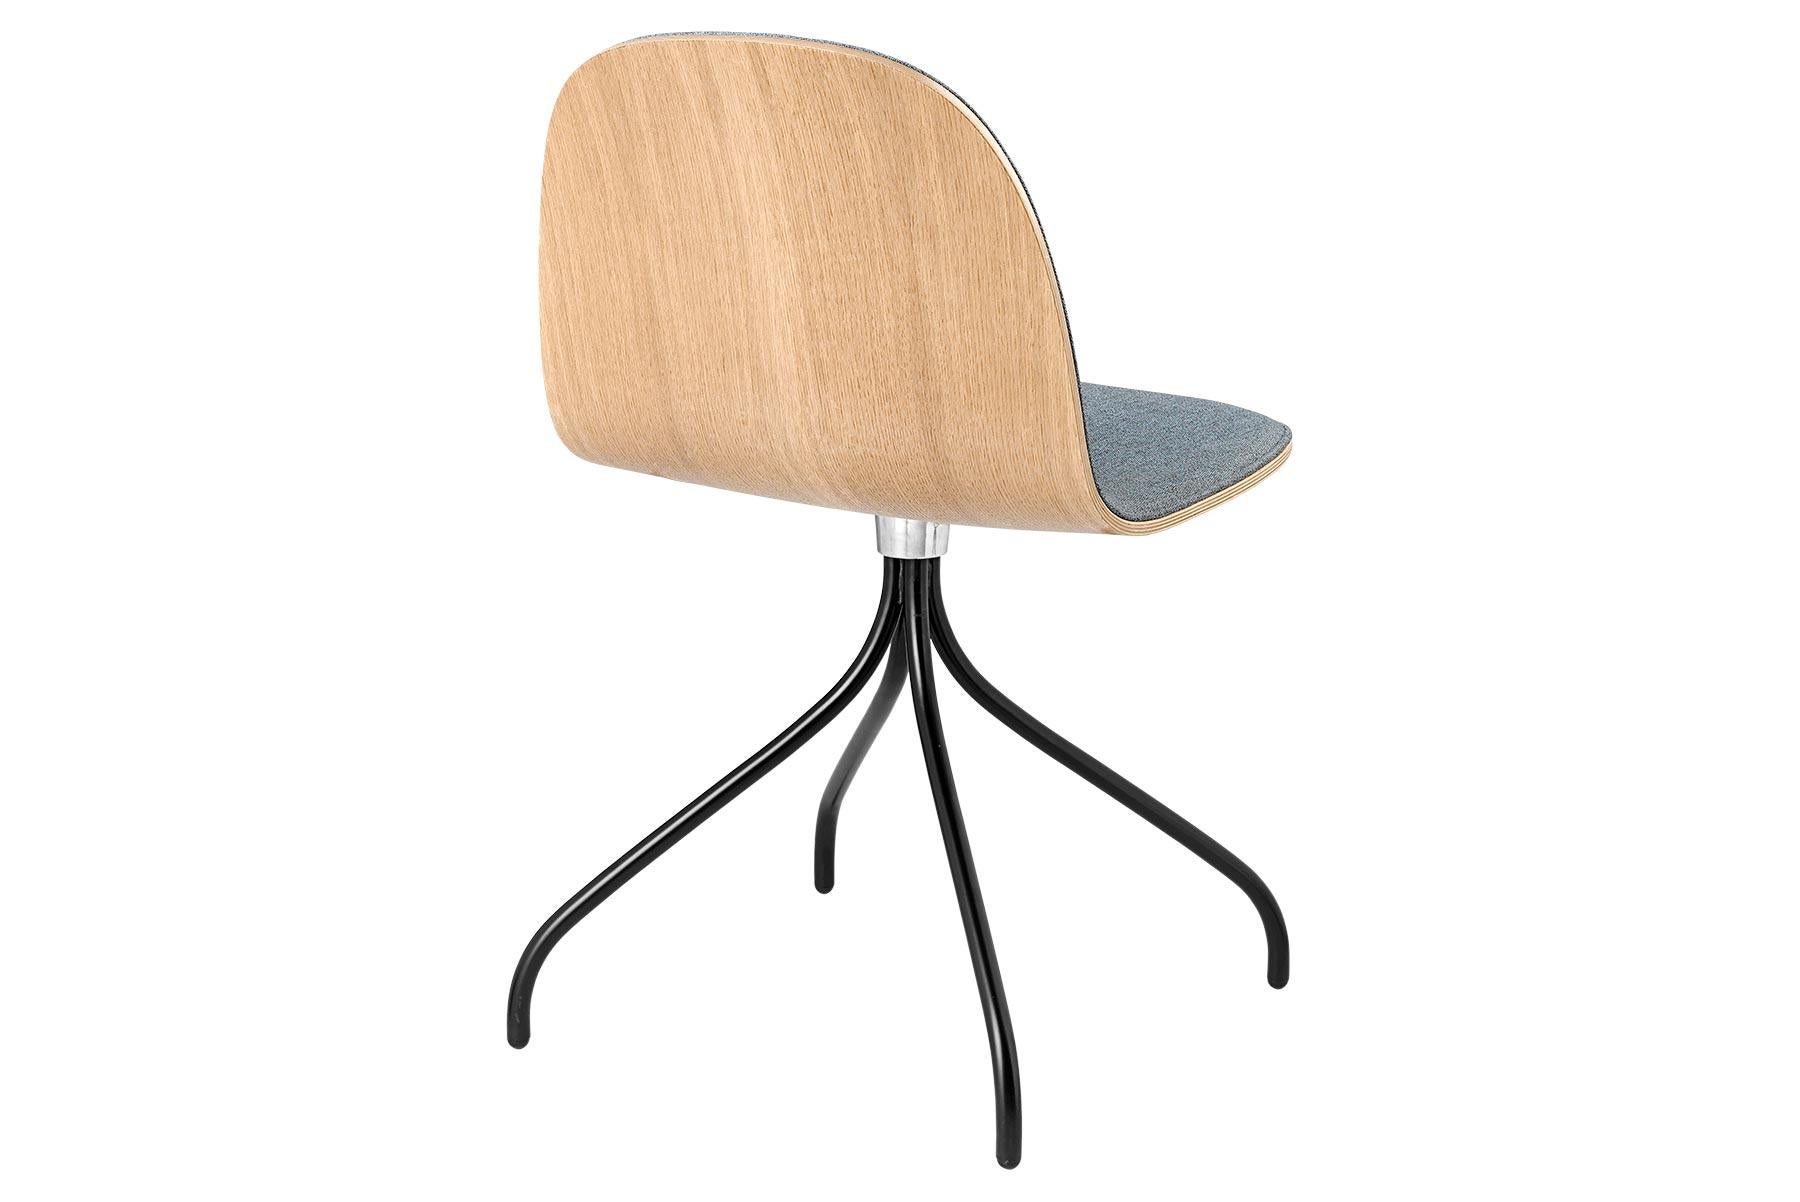 Der GUBI 2D Chair ist eine Serie von leichten Esszimmerstühlen aus laminiertem Furnier mit der Möglichkeit, die Vorderseite mit einer Vielzahl von Stoffen und Ledern zu beziehen, die sowohl für private als auch für öffentliche Räume geeignet sind.